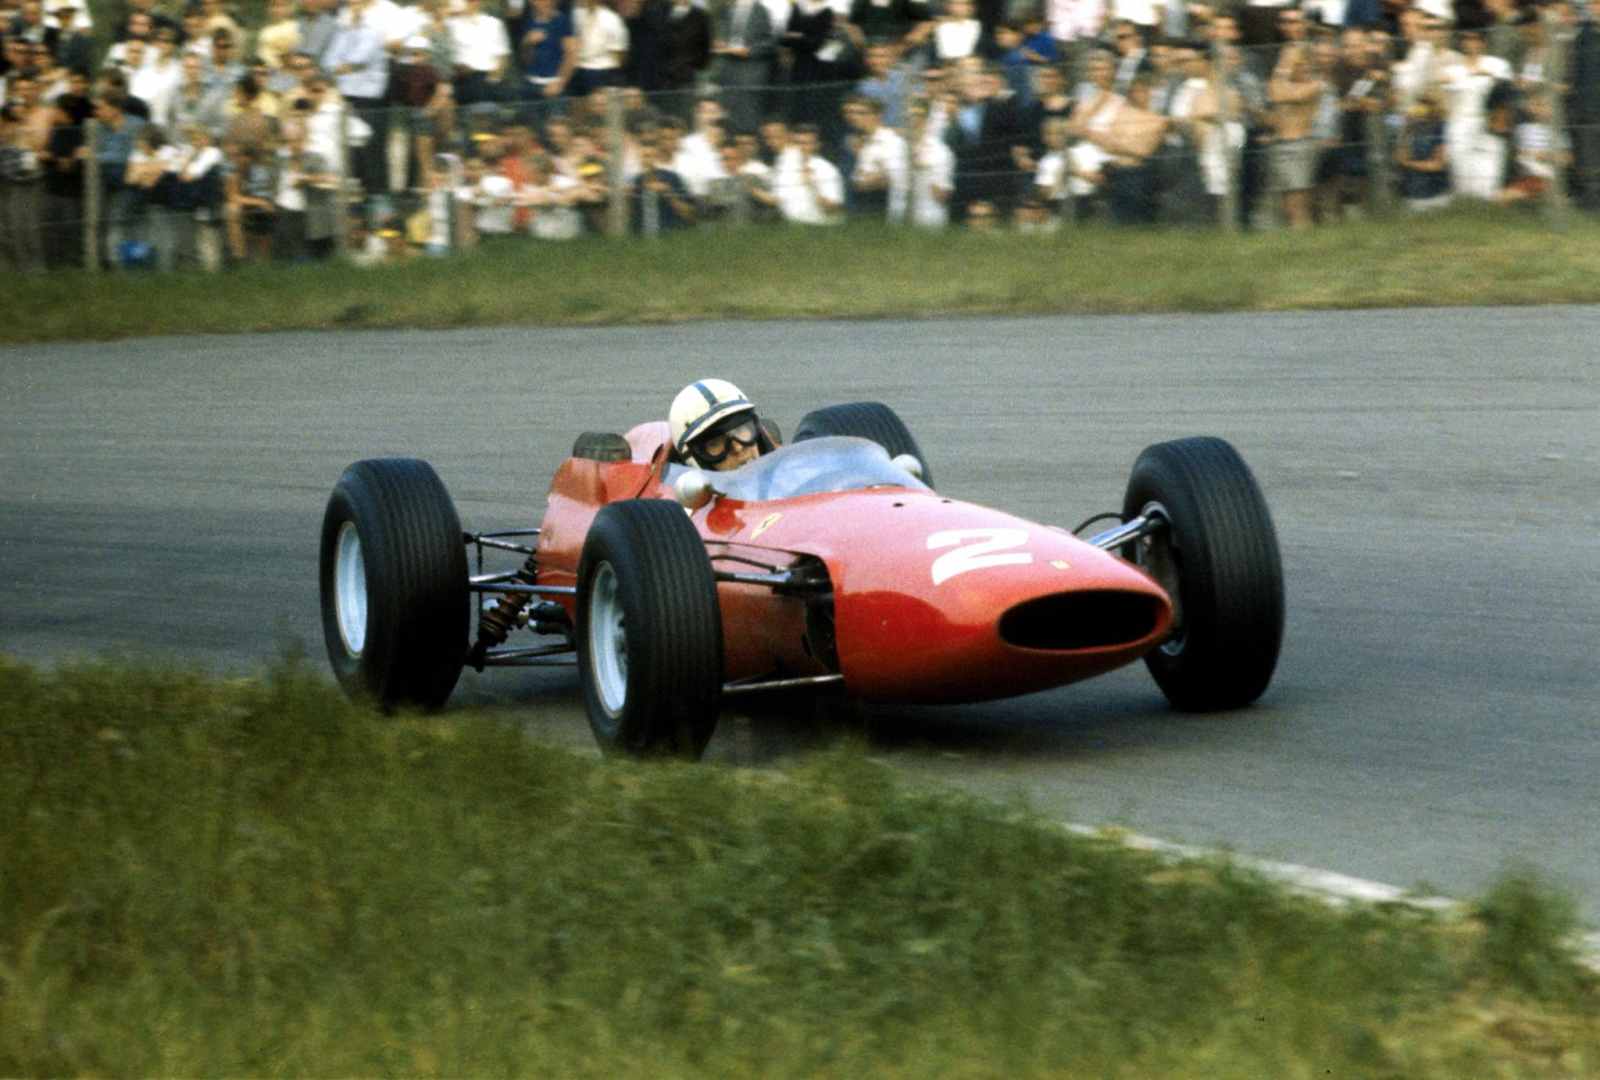 John Surtees levou a Ferrari ao título em 1964. Único piloto a vencer o Mundial de Fórmula 1 e Motovelocidade